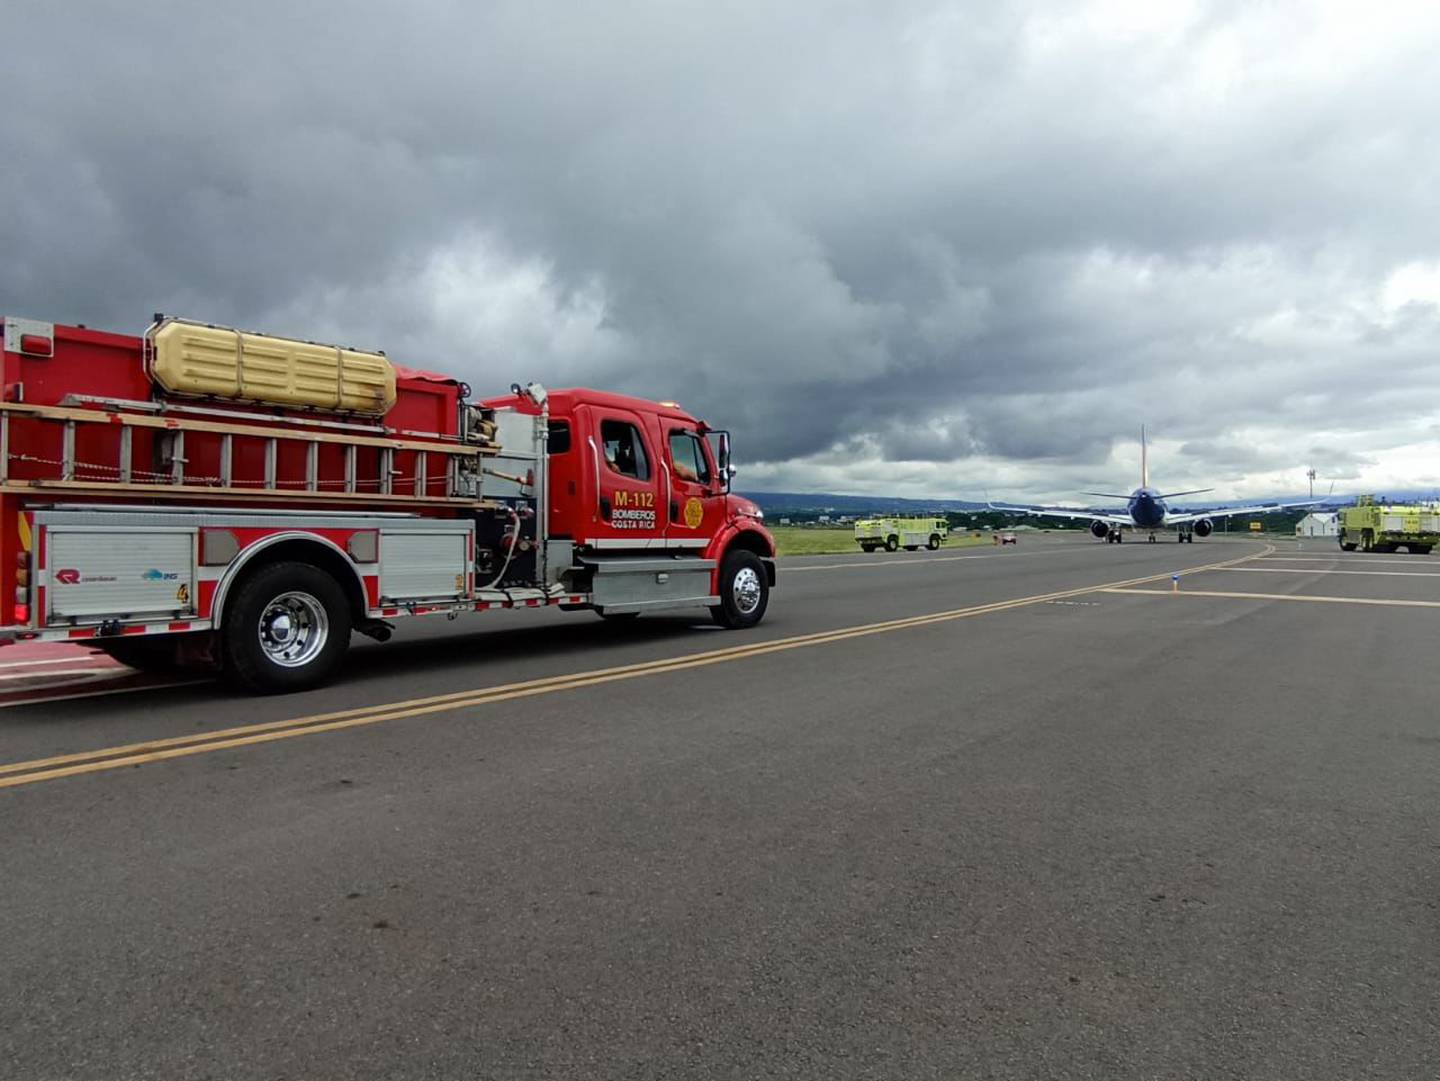 Los bomberos se encargaron de atender una emergencia con un avión por una falla en uno de los motores.